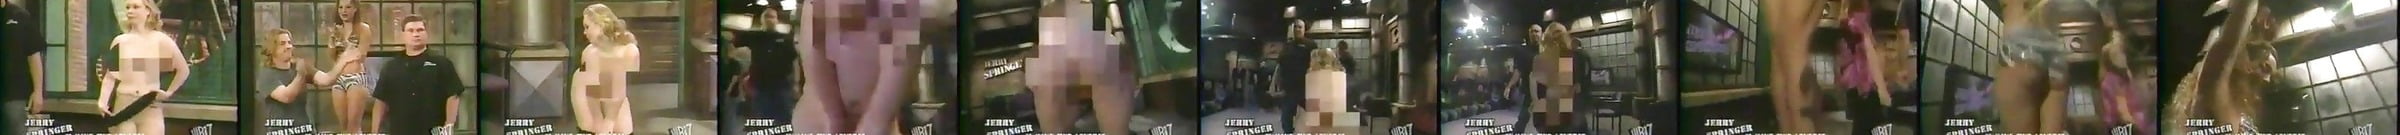 Best Jerry Springer Porn Videos Xhamster